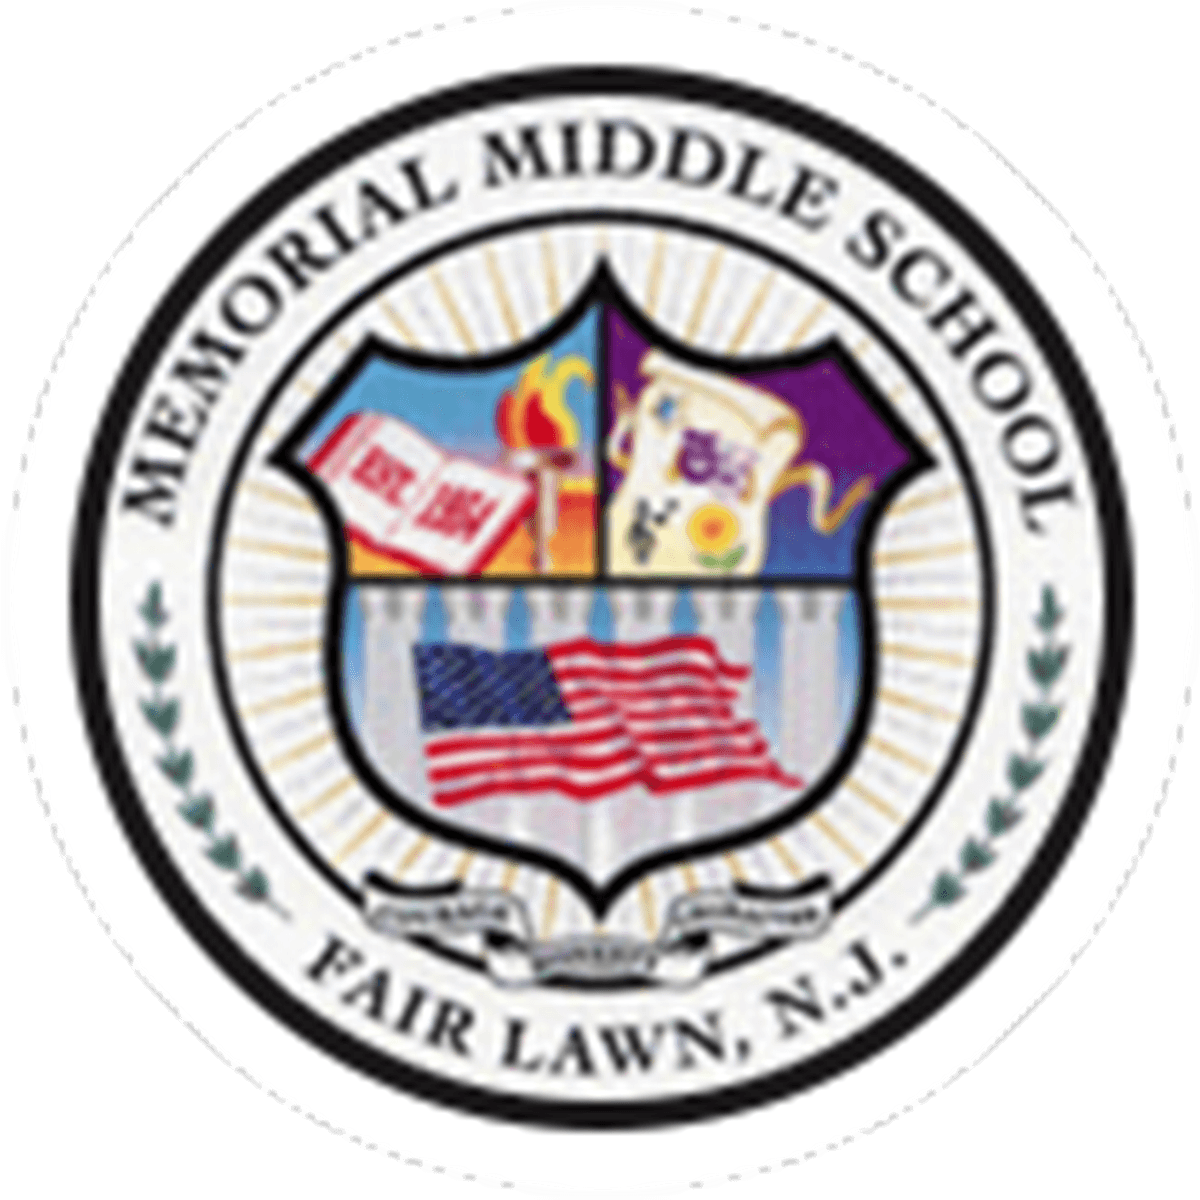 Memorial Middle School logo